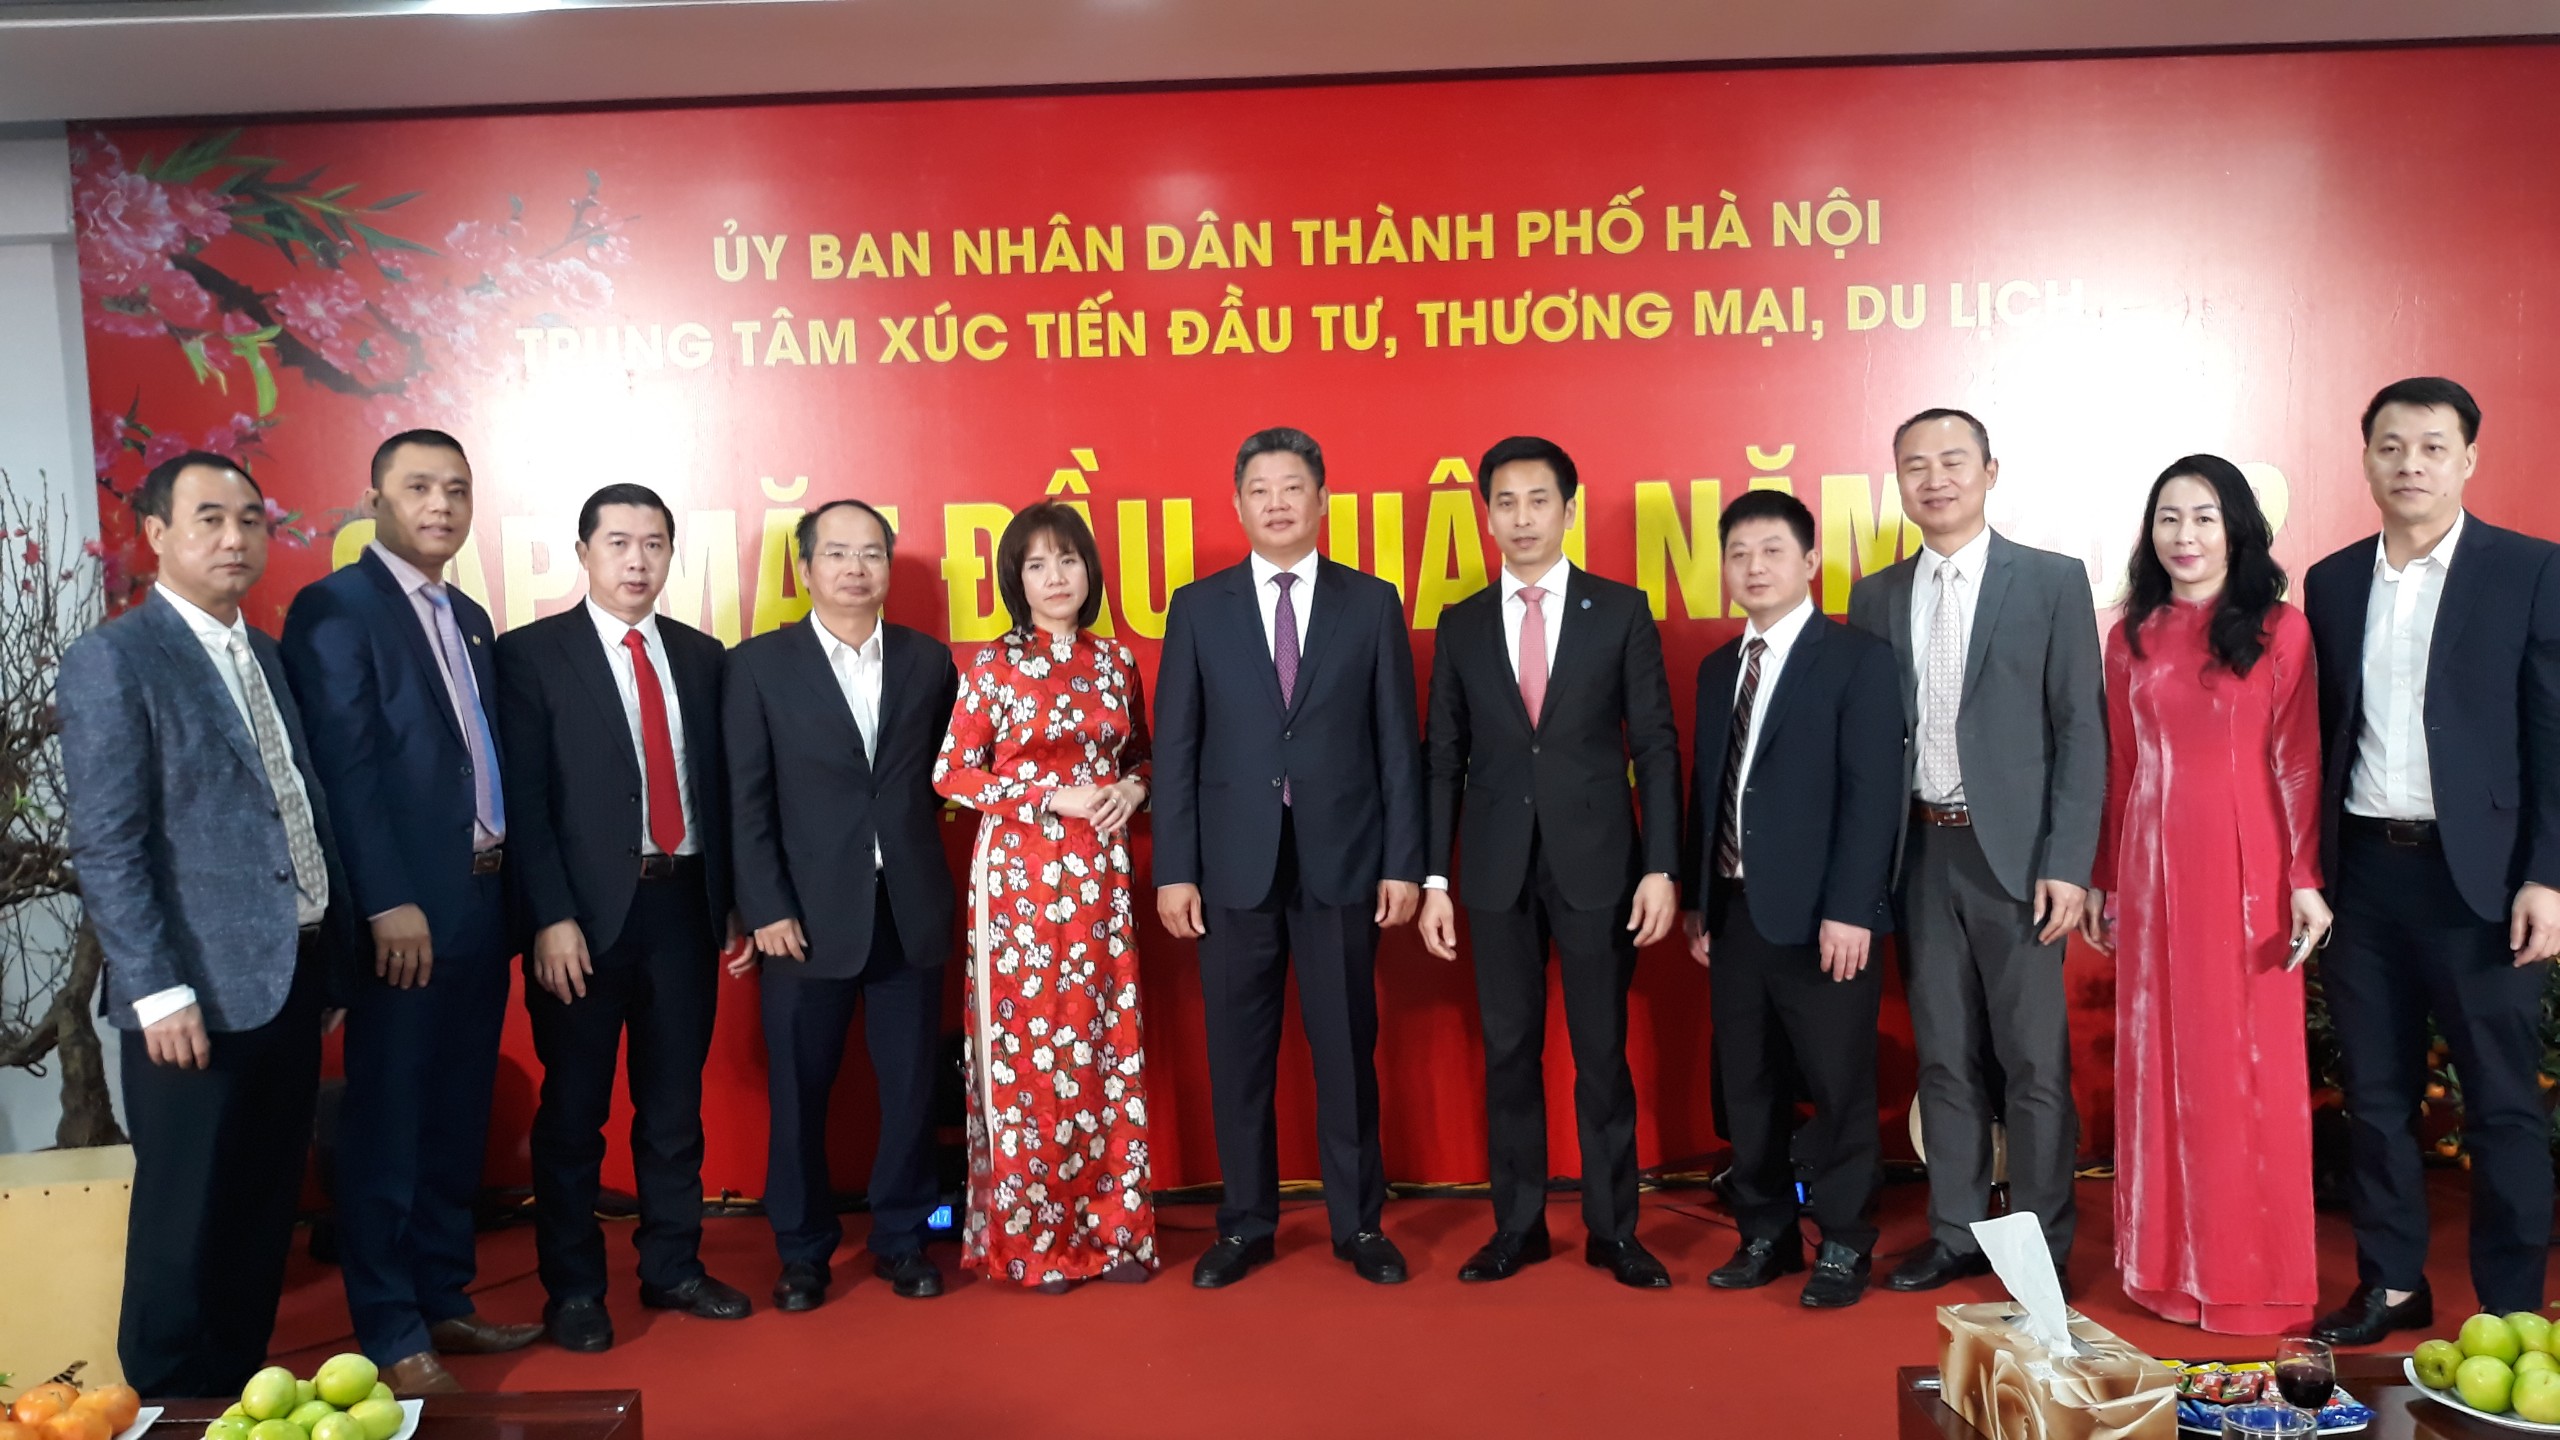 Phó Chủ tịch UBND TP. Hà Nội Nguyễn Mạnh Quyền tại buổi làm việc với HPA ngày 7/2